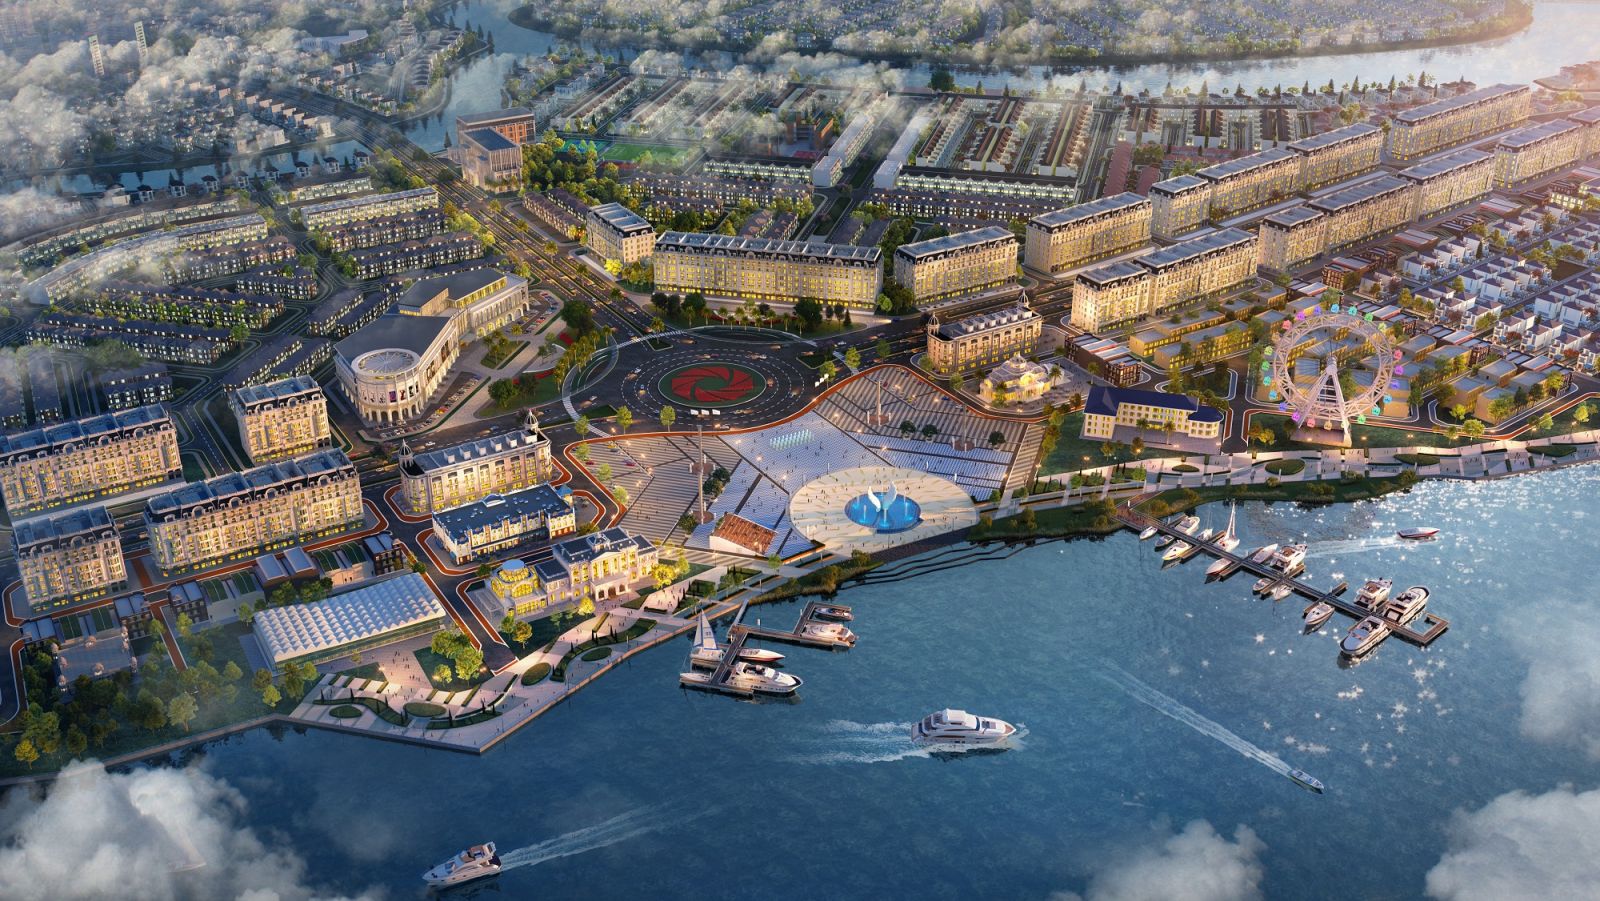 Tổ hợp quảng trường - bến du thuyền Aqua Marina tại Aqua City dự kiến hoàn thiện vào quý 4/2021 kỳ vọng sẽ là điểm đến hấp dẫn bậc nhất phía Đông TP.HCM